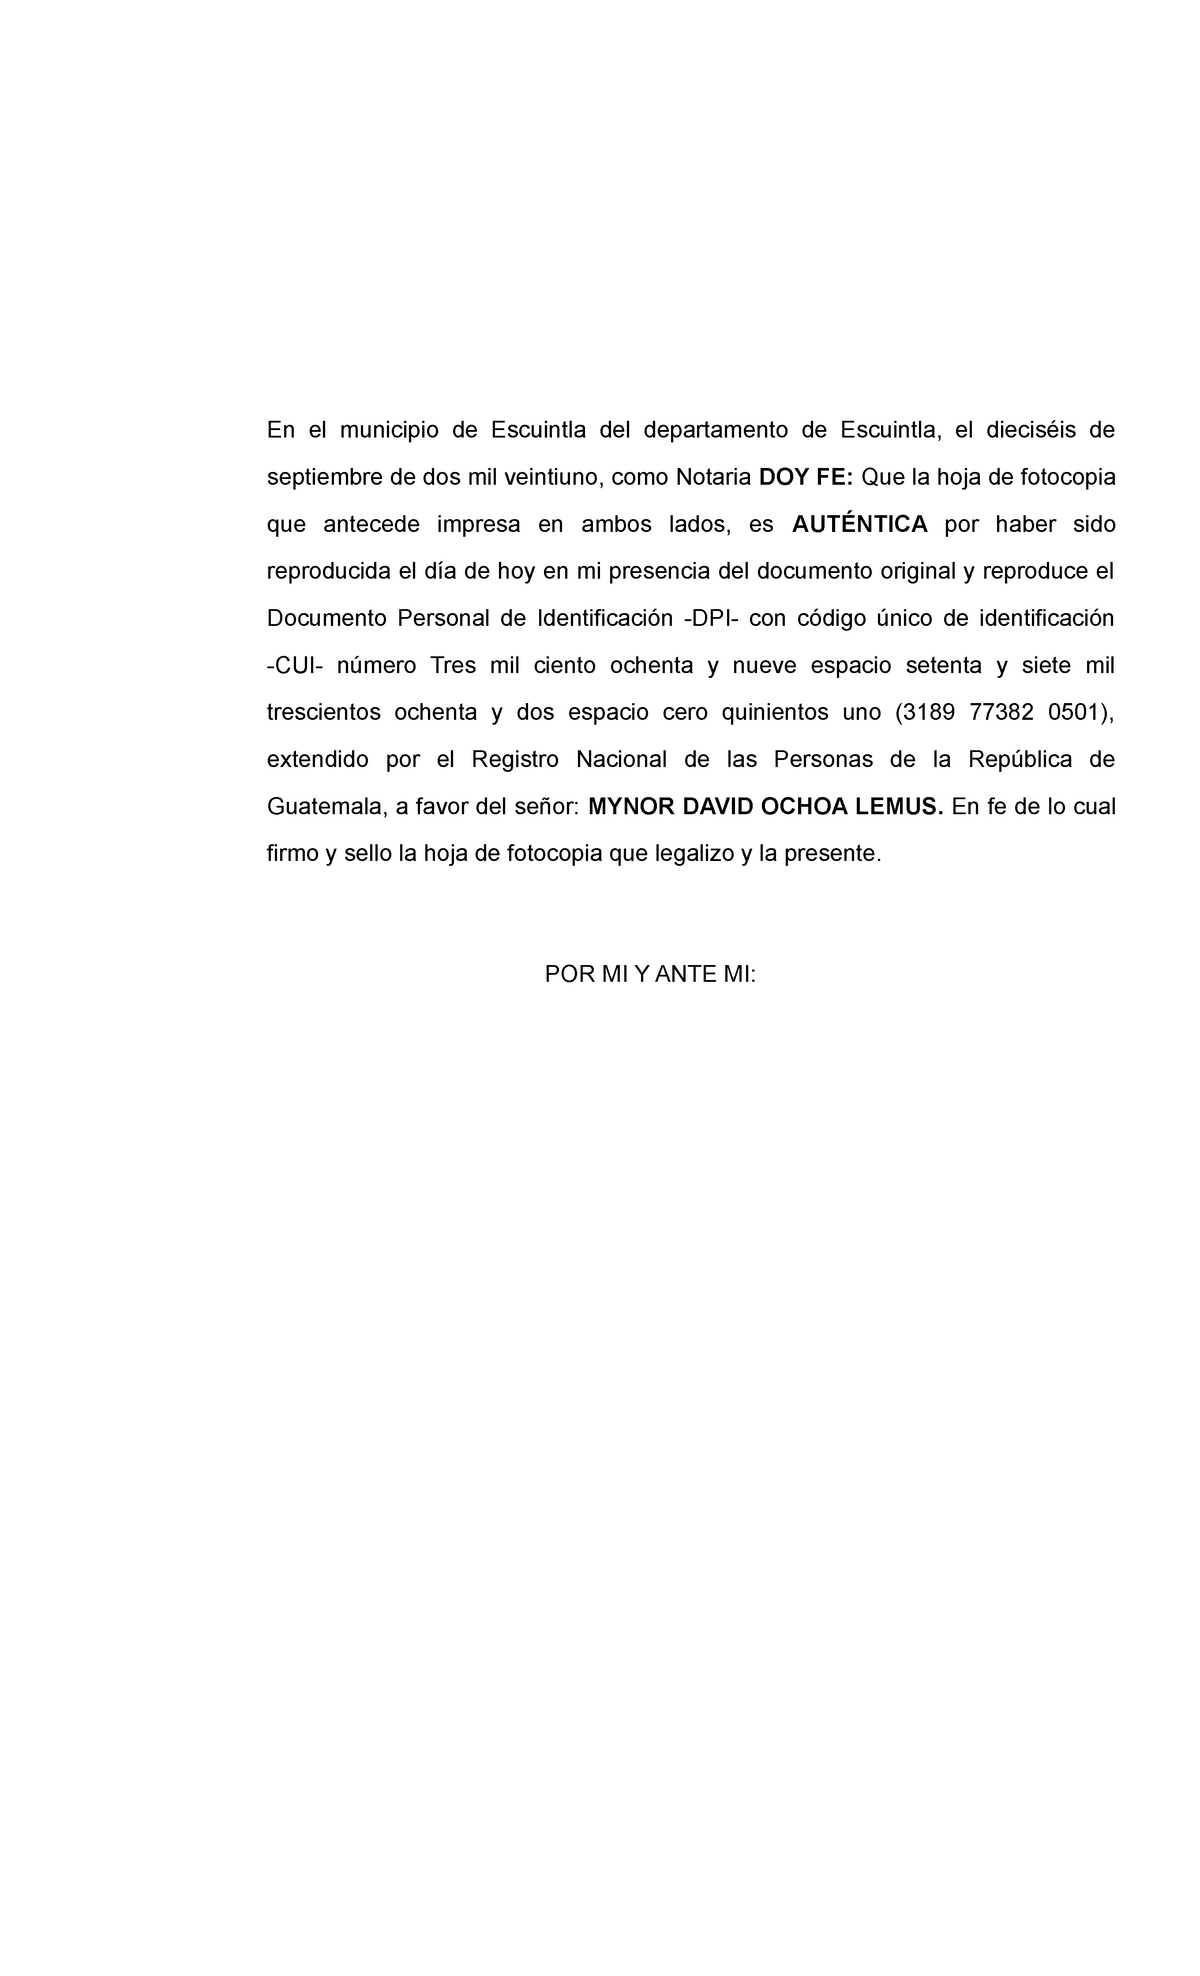 Acta De Legalizacion De Un Documento Y Su Respectiva Razon Derecho